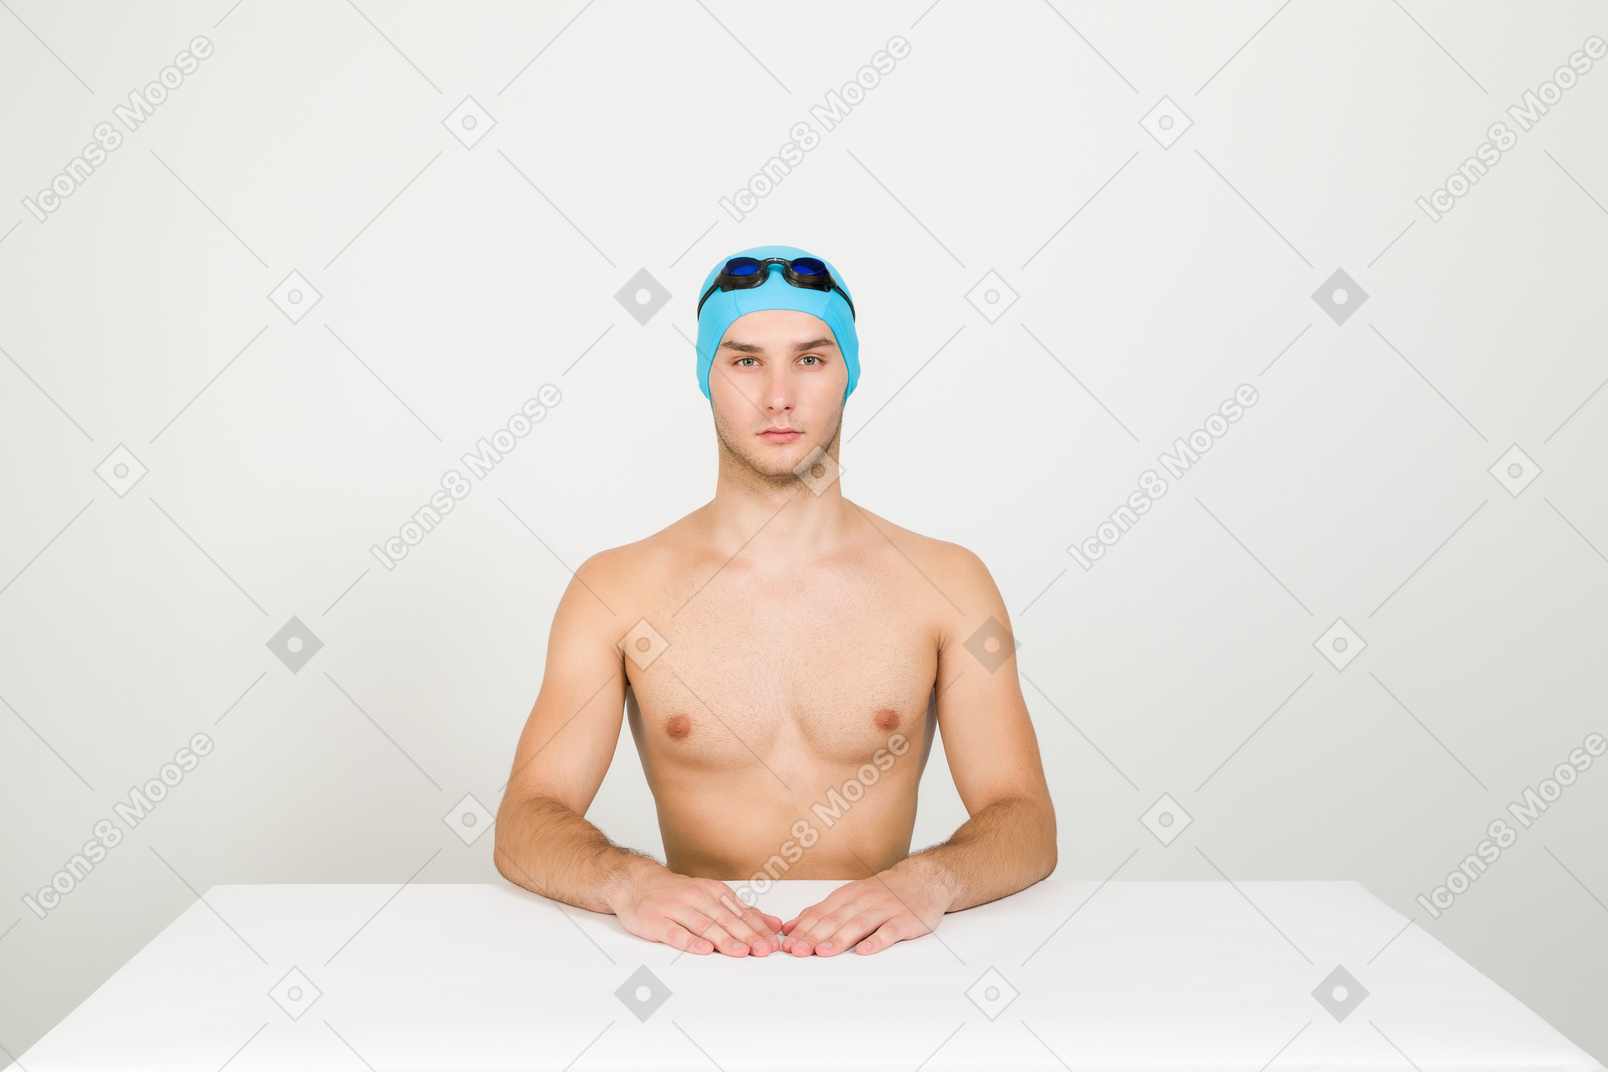 赤裸上身的游泳者坐在桌前，双手放在它上面